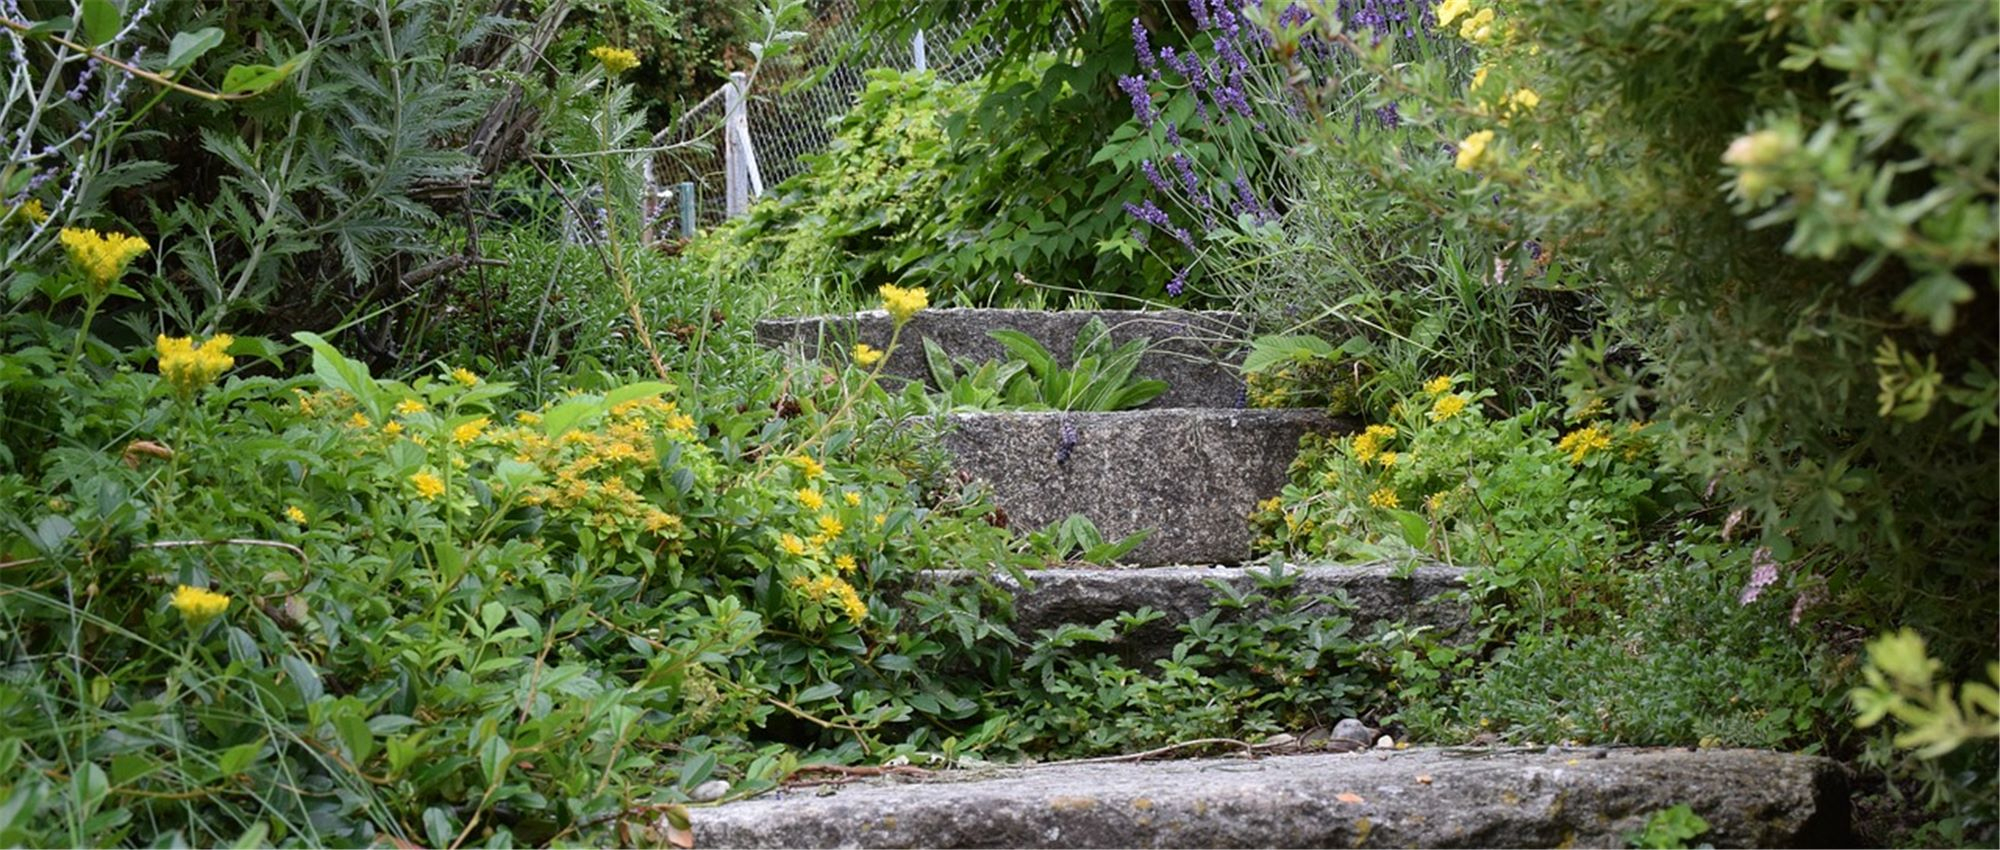 Comment Aménager Un Jardin En Pente ? - Gardena concernant Amanagement Jardin En Pente